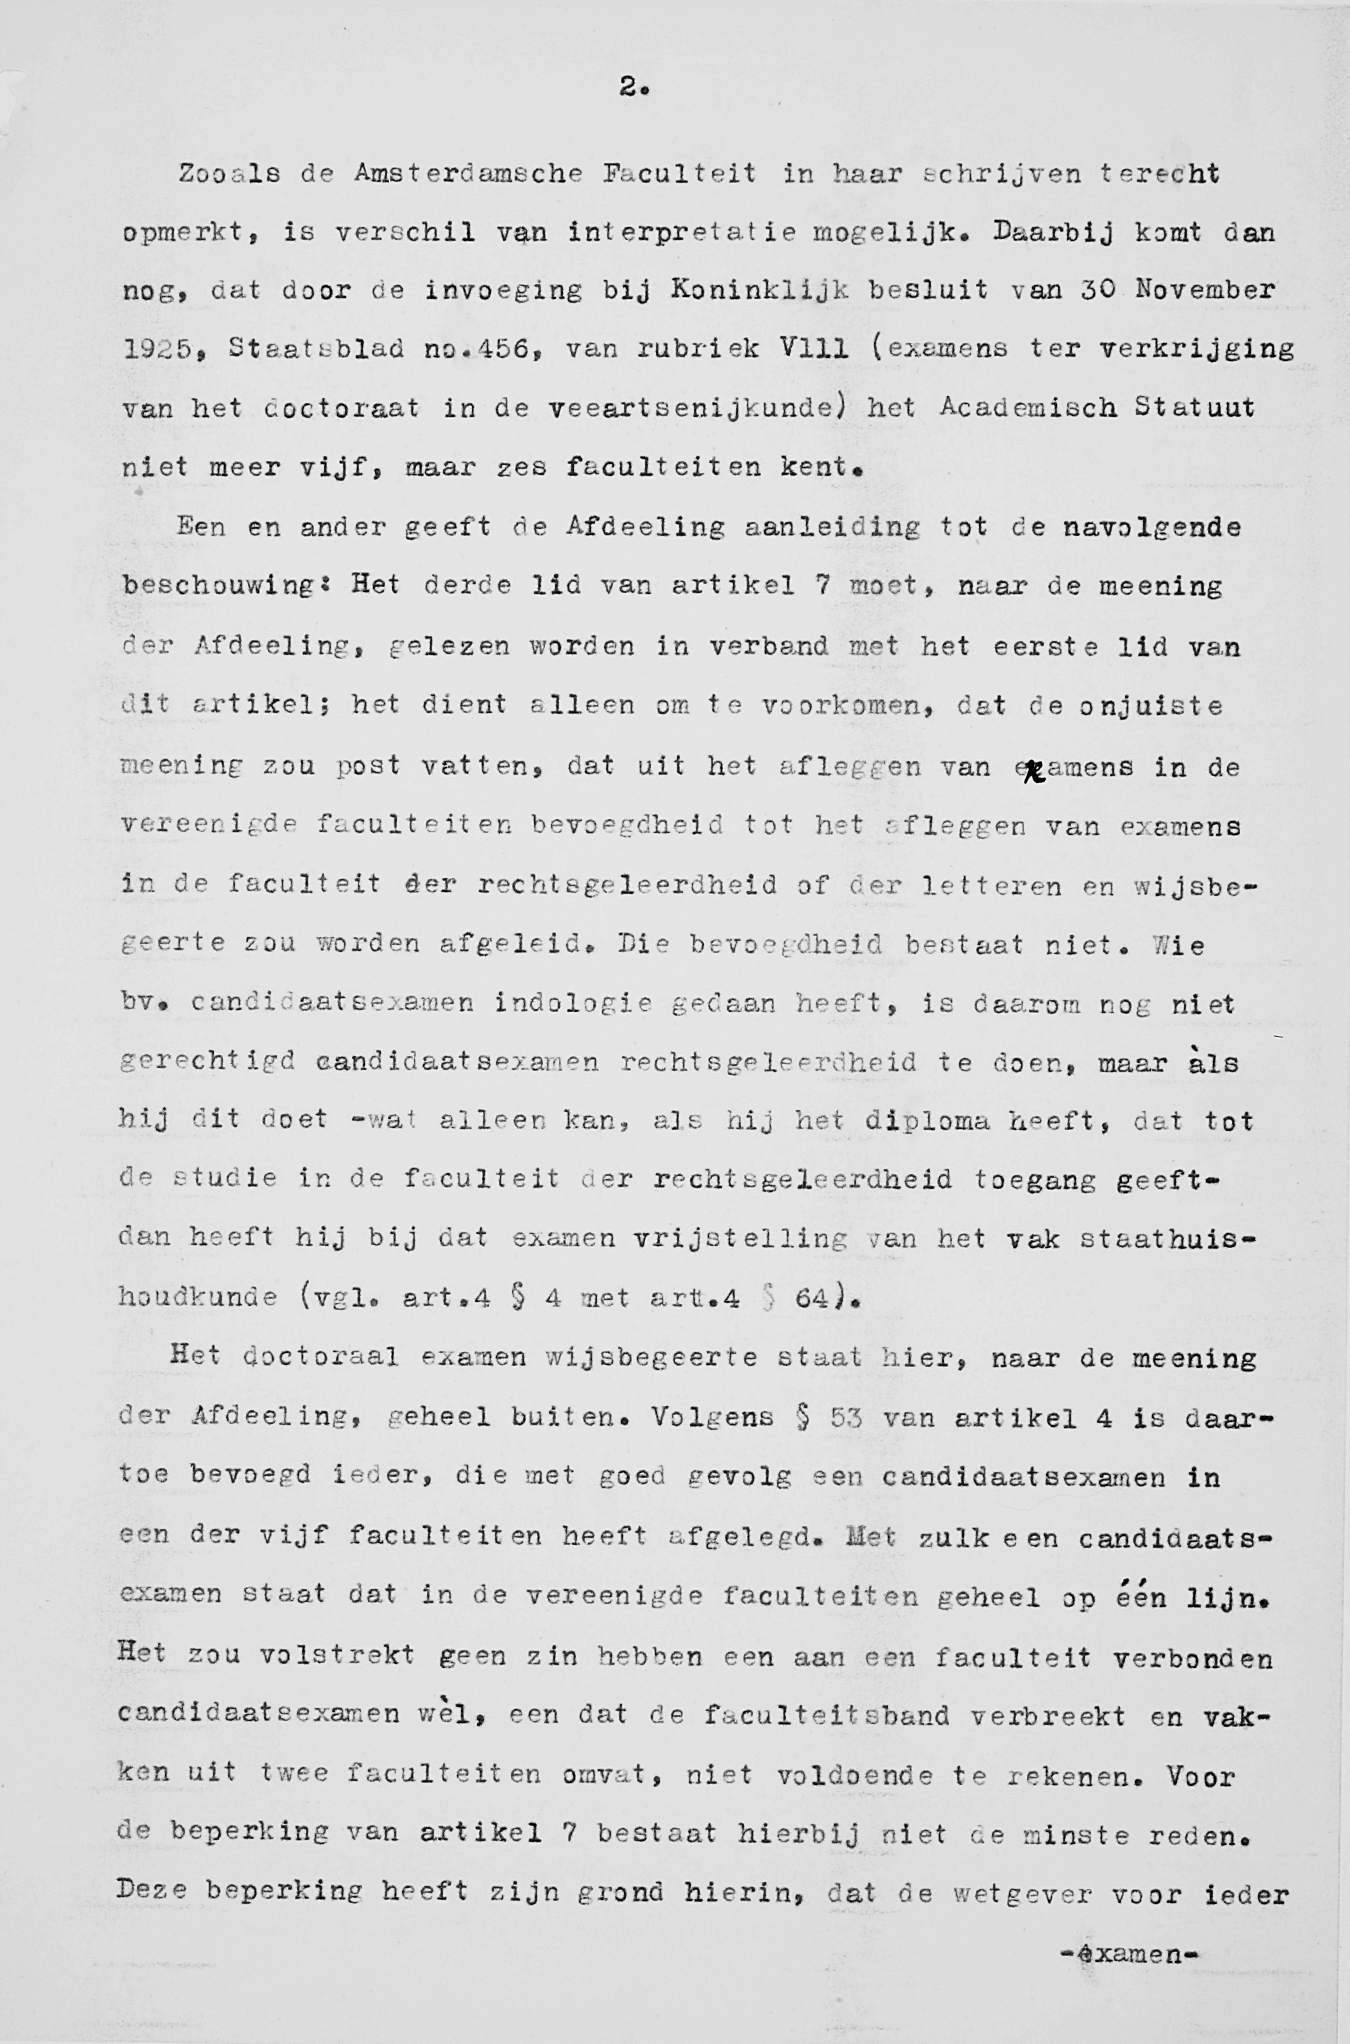 2«Zooals de Amsterdamsche Faculteit in haar schrijven terecht opmerkt, is verschil van interpretatie mogelijk» Daarbij komt dan nog» dat door de invoeging bij Koninklijk besluit van 30 November 1925»